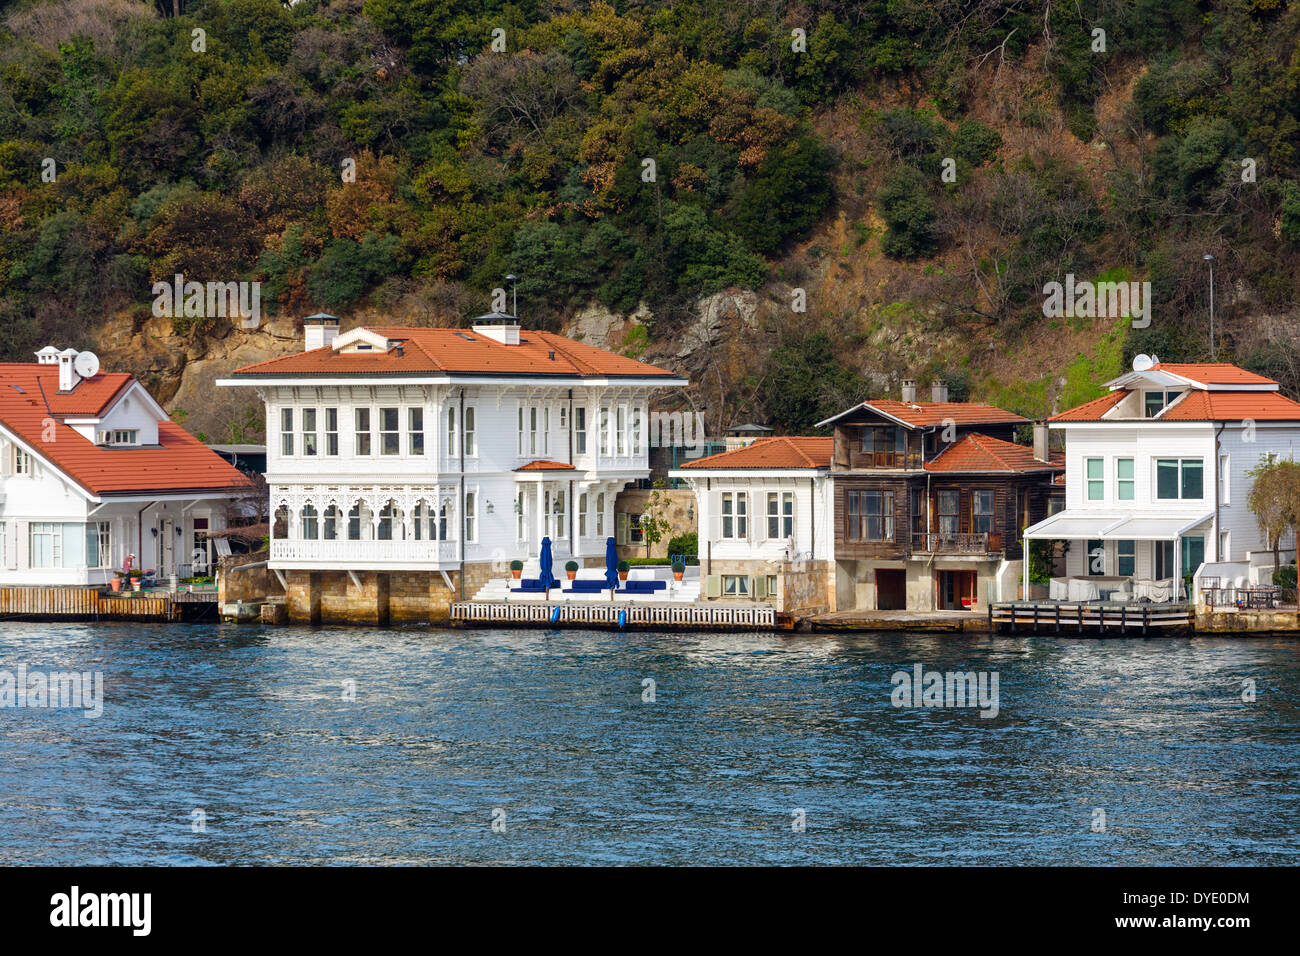 Yalis (esclusivo lungomare mansions) lungo la sponda asiatica del Bosforo visto da crociera sul Bosforo barca, Istanbul, Turchia Foto Stock